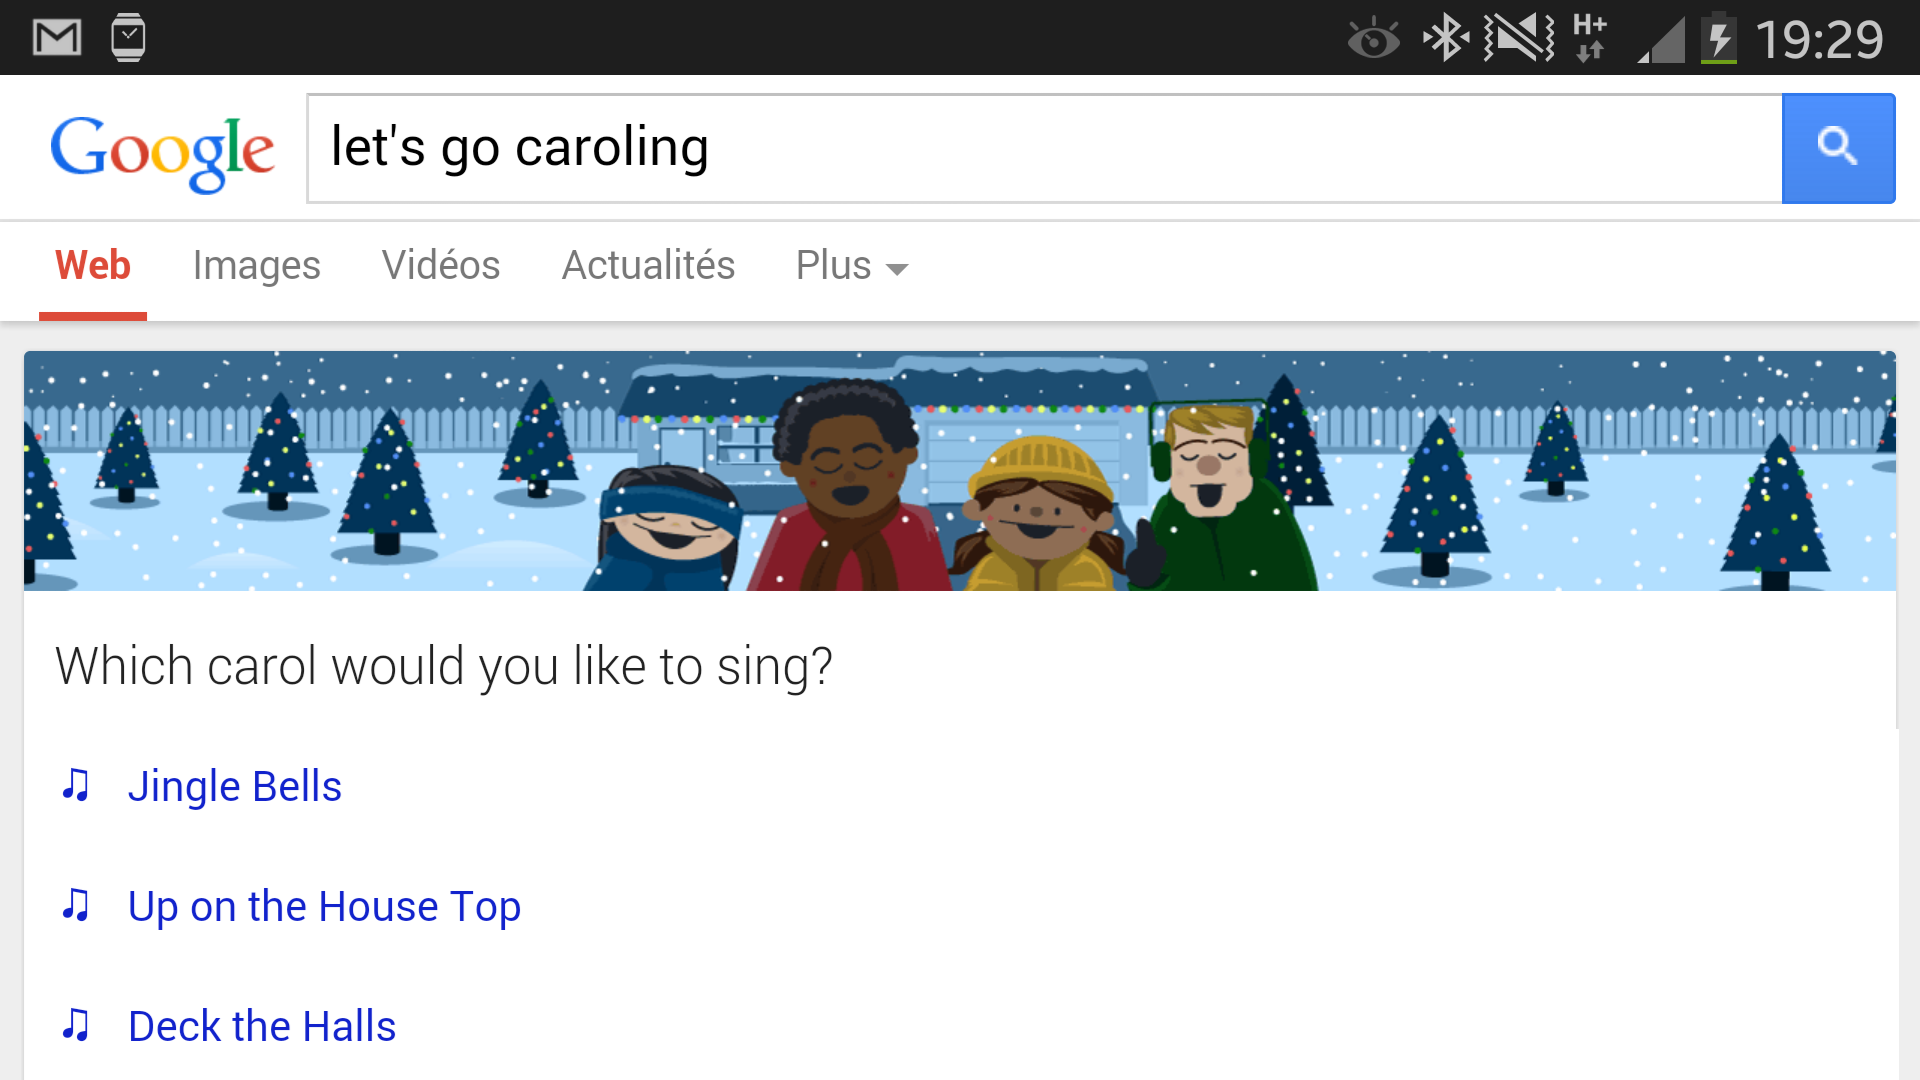 Easter Egg Google : tapez "let's go caroling" sur votre mobile et préparez-vous à chanter!